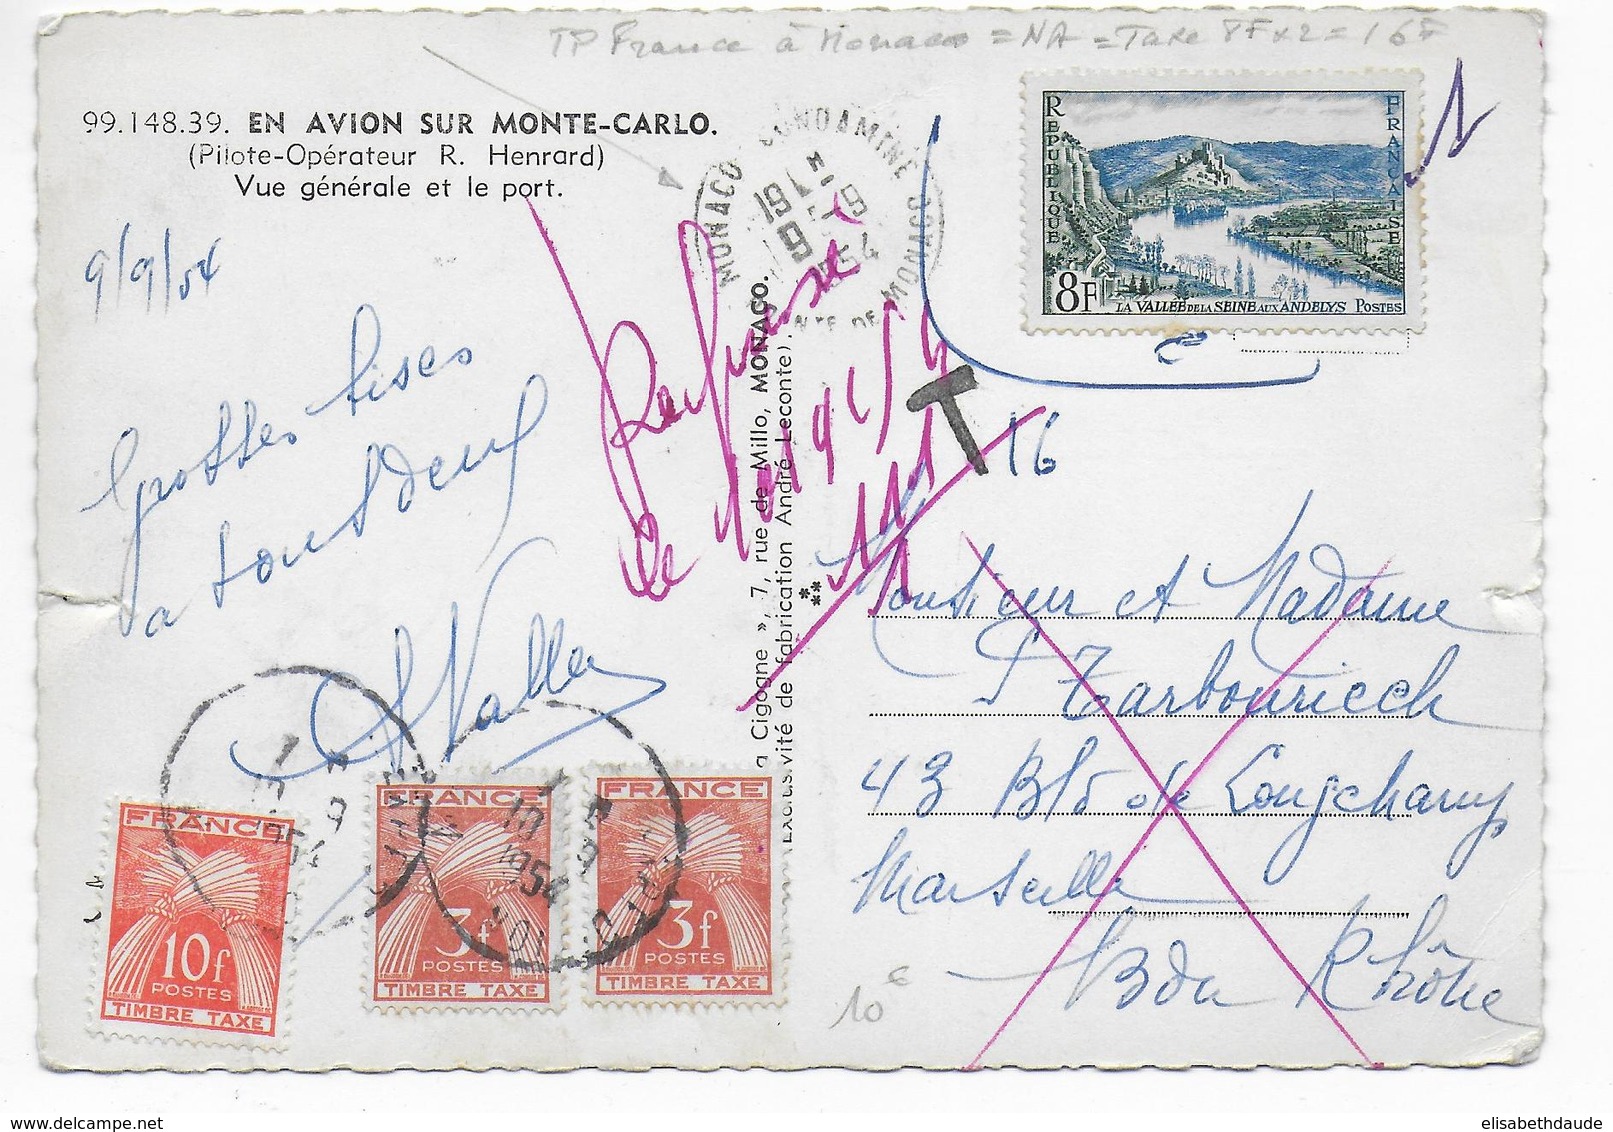 MONACO - 1954 - TIMBRE DE FRANCE NON VALIDE UTILISE à MONACO => TAXE - CP => MARSEILLE => REFUSE - Postmarks